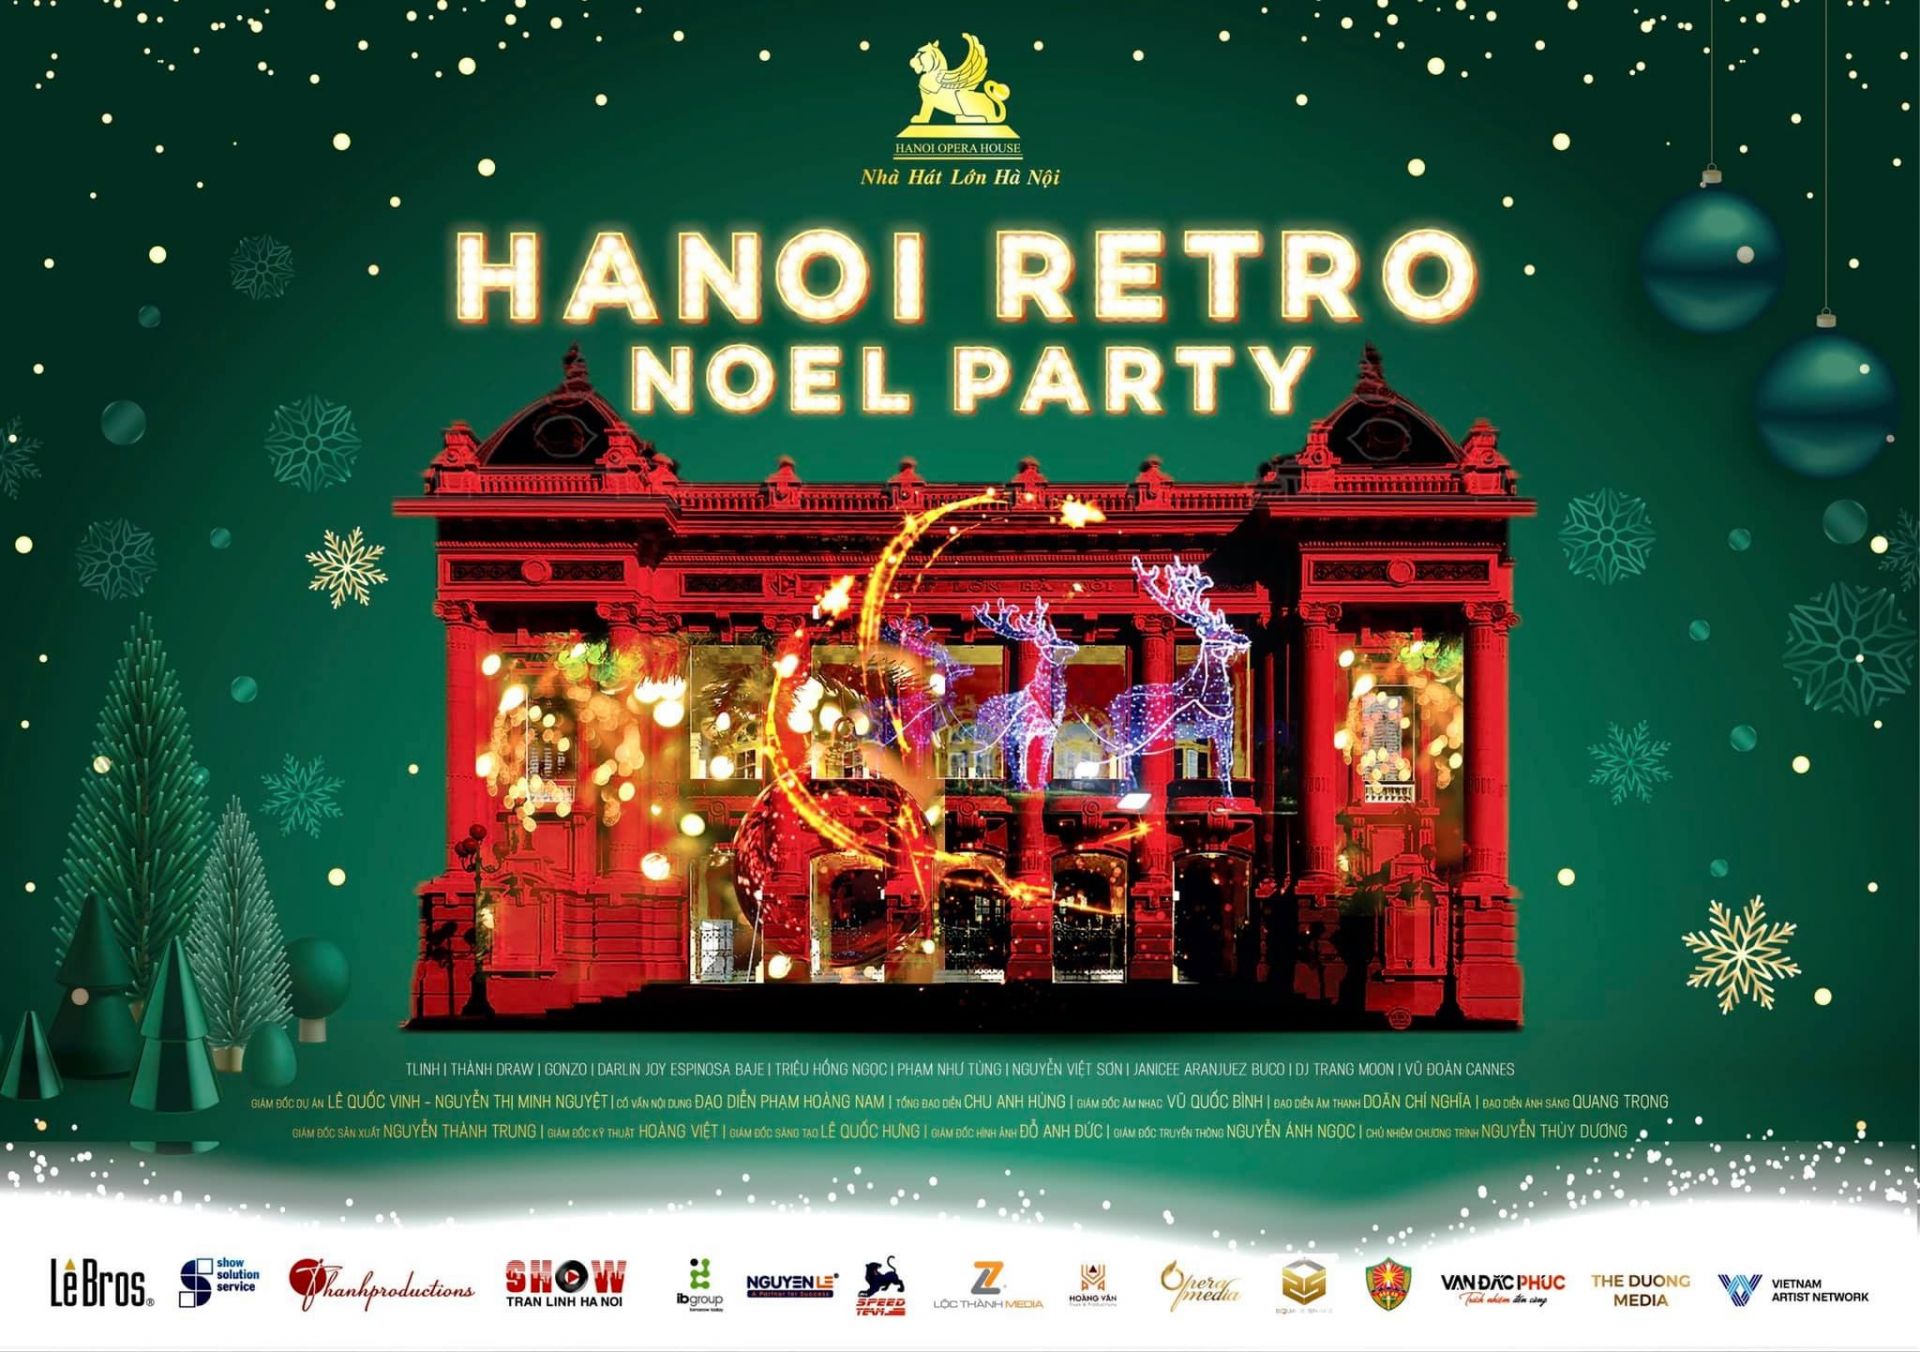 HANOI RETRO NOEL PARTY